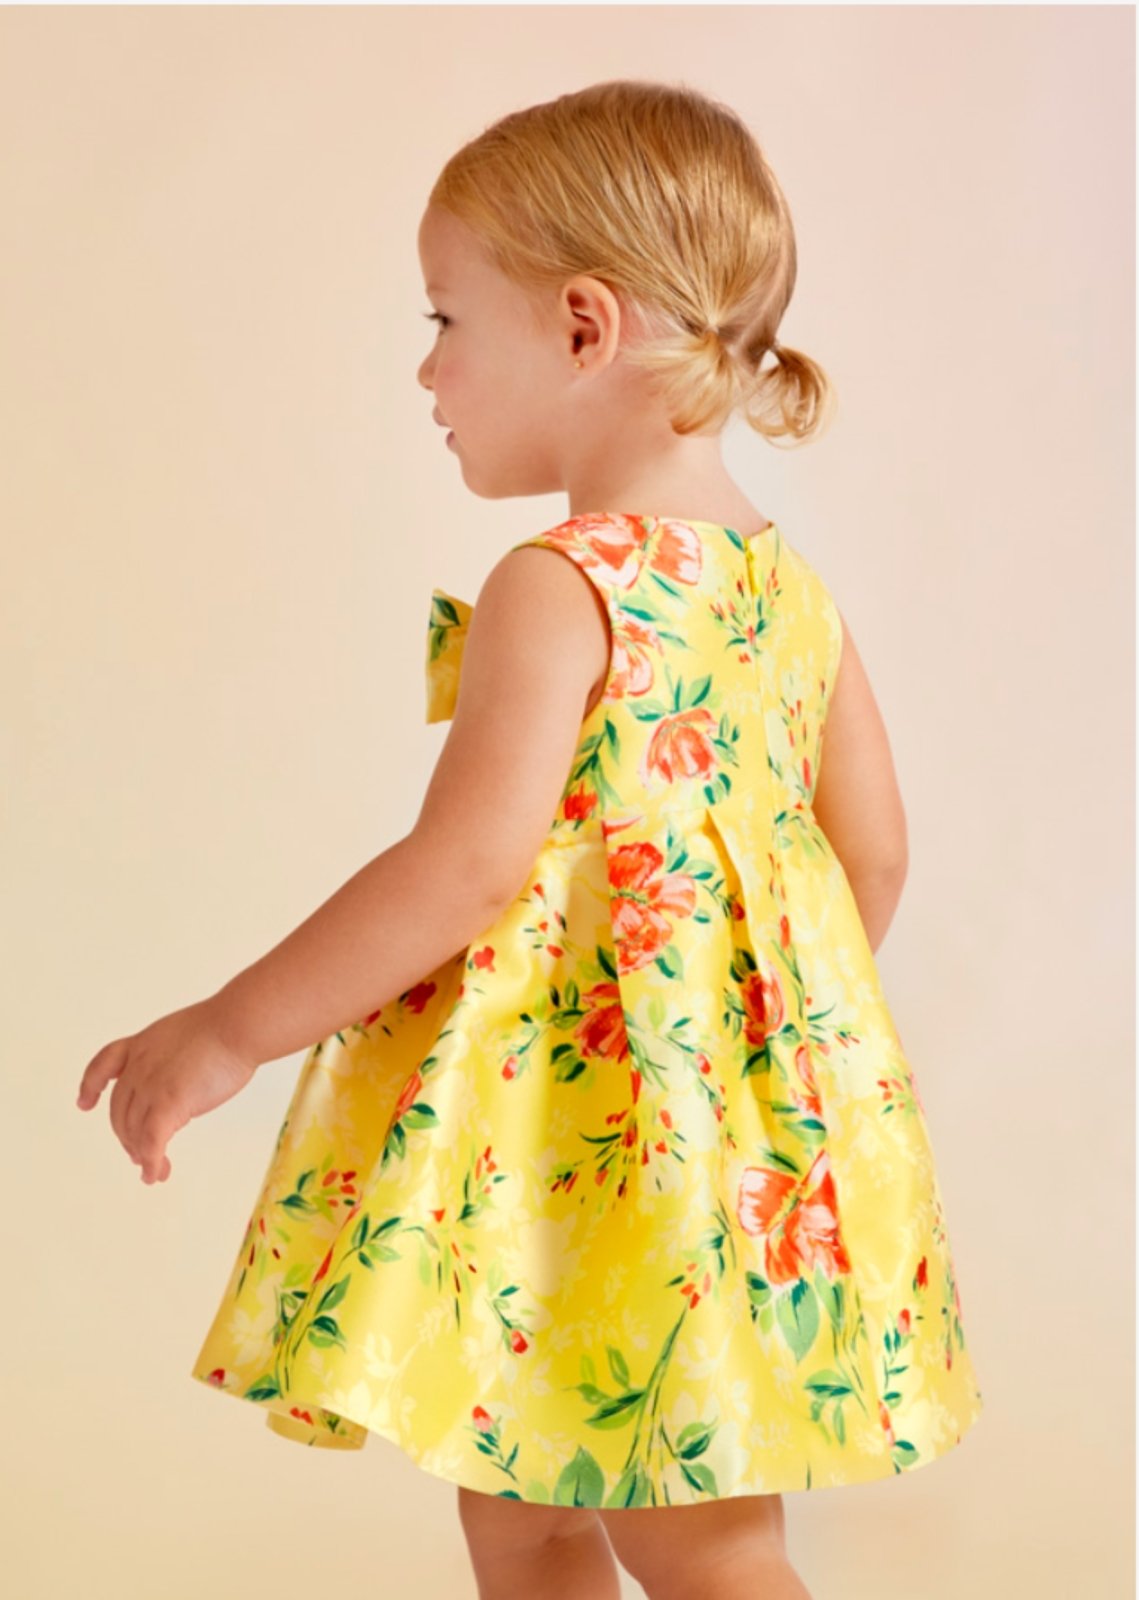 Baby Dress Kids Girl Princess Flower New Clothes Normal Frock Yellow Linen  cheap | eBay